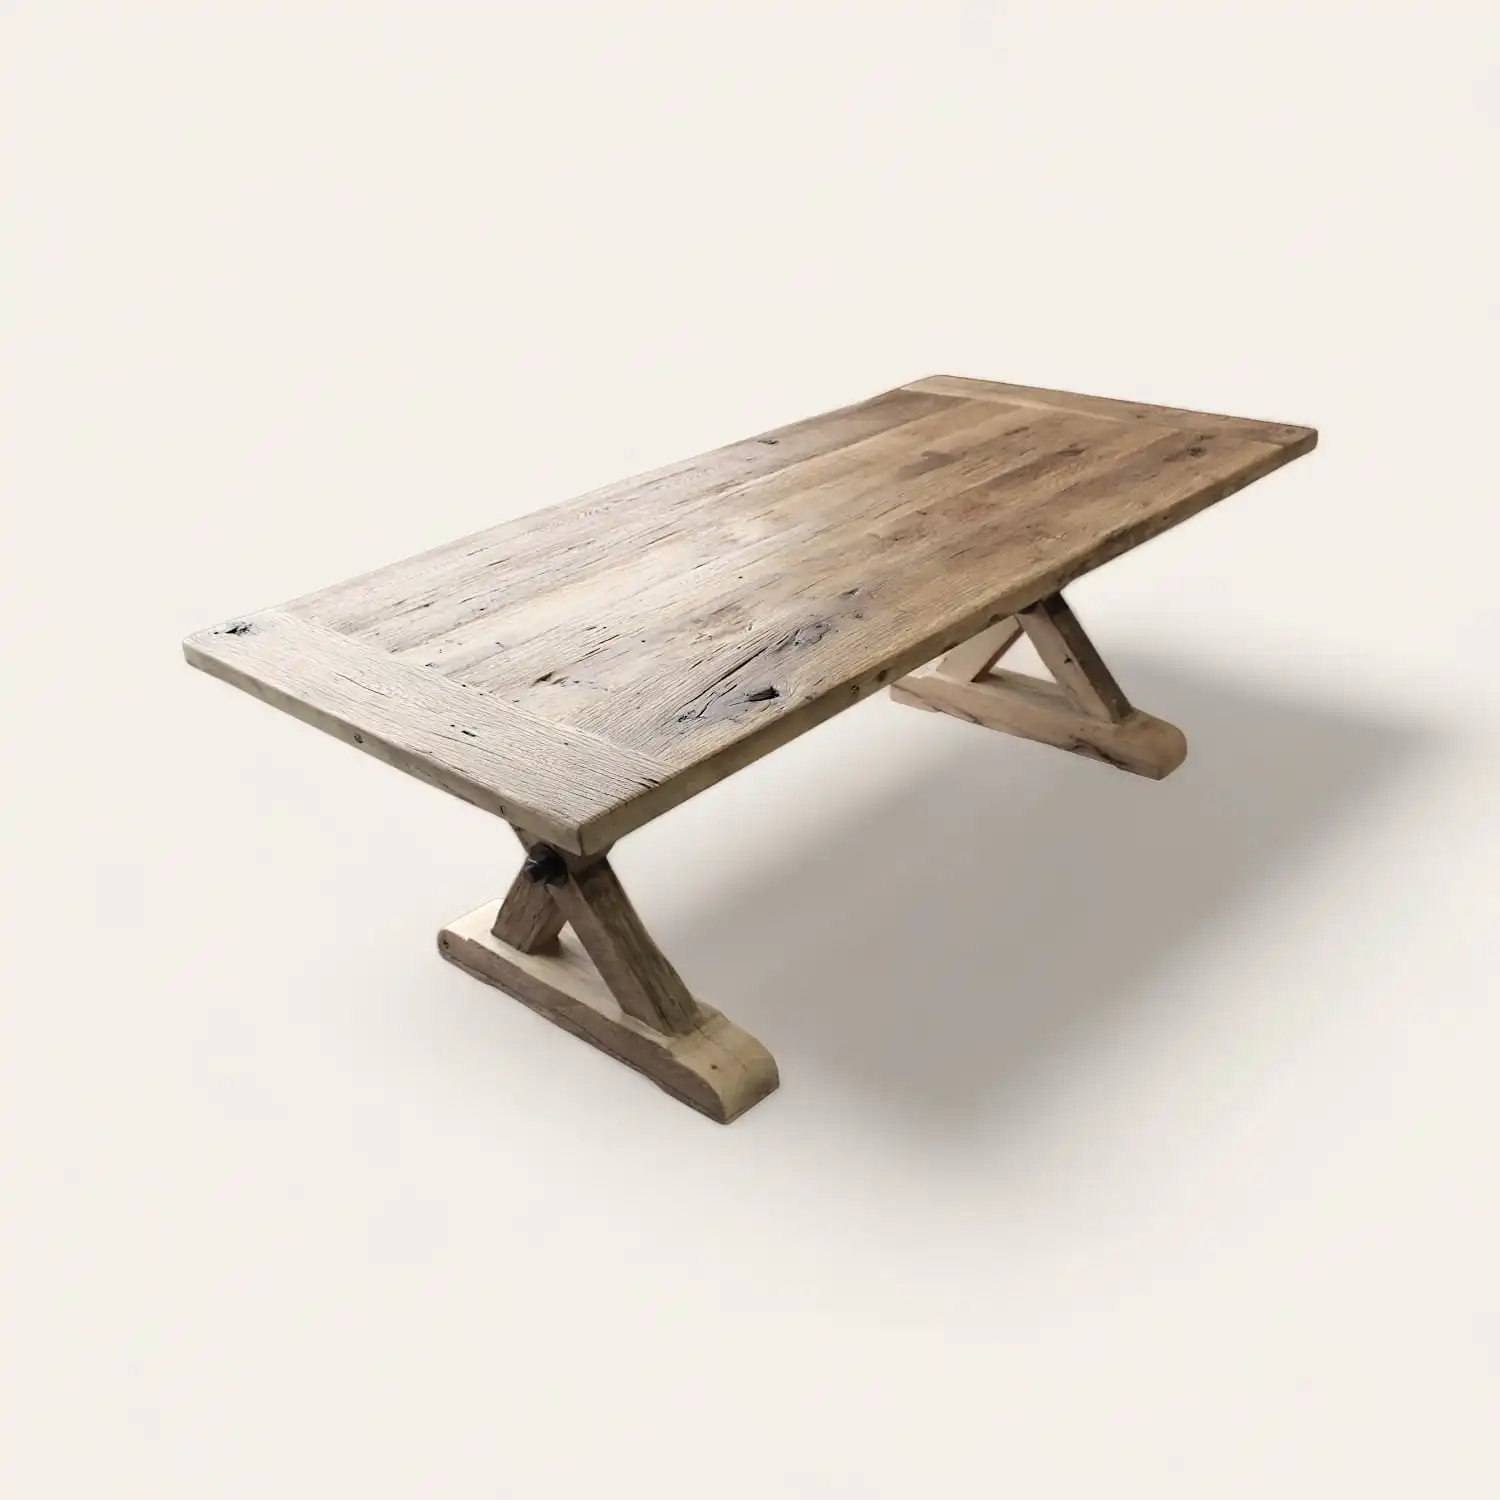  Table de repas rustique allongée en bois ancien avec des pieds en X, conçue pour apporter un charme d'antan et une ambiance chaleureuse à tout espace de vie ou salle à manger. 